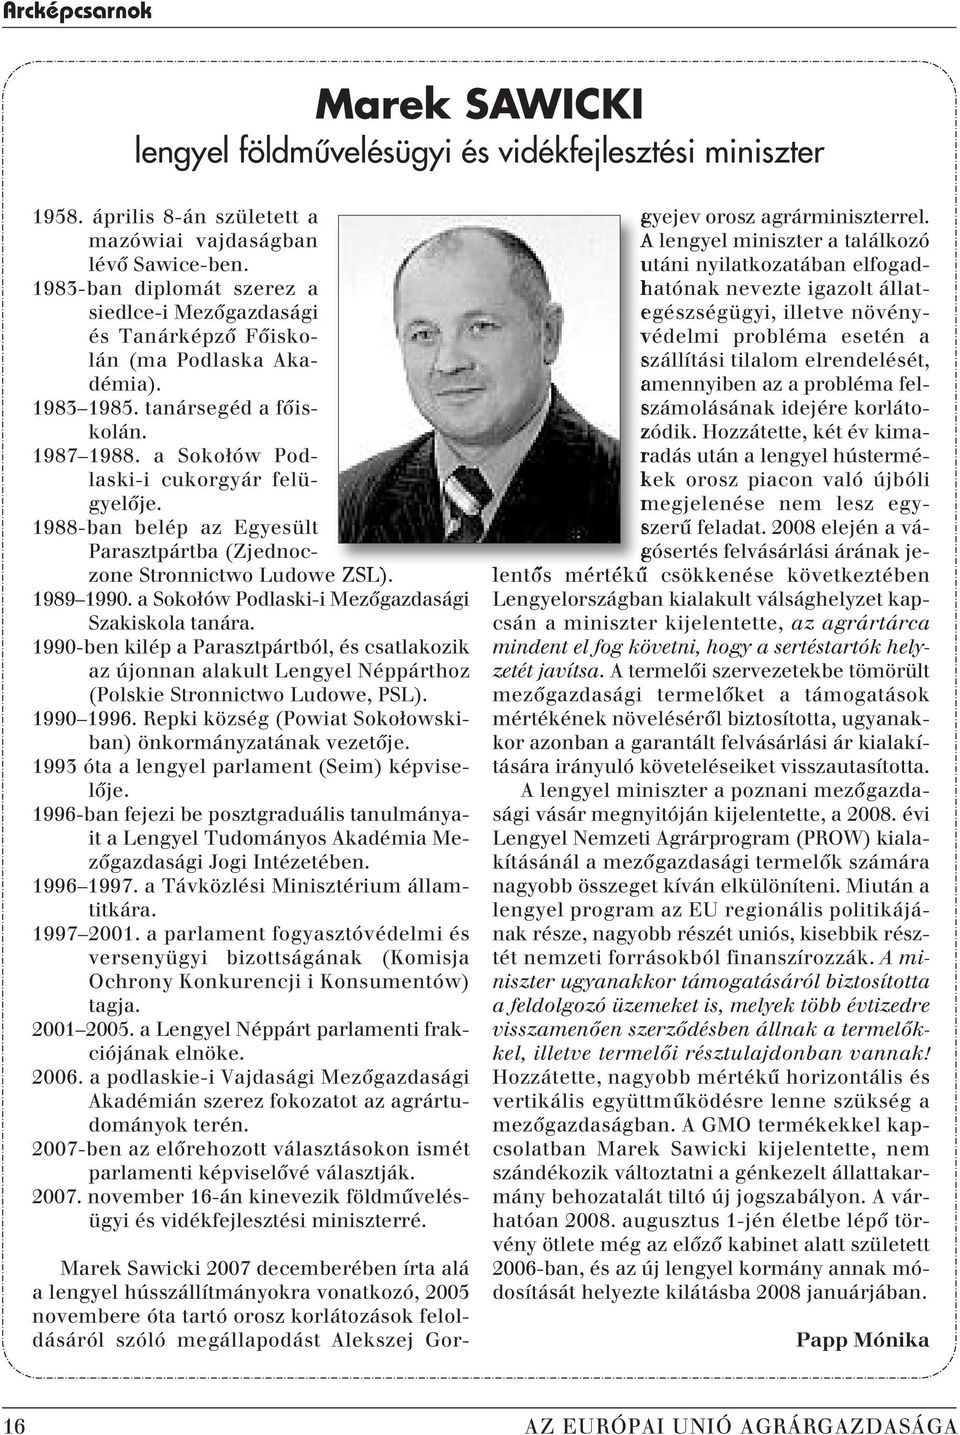 1988-ban belép az Egyesült Parasztpártba (Zjednoczone Stronnictwo Ludowe ZSL). 1989 1990. a Sokołów Podlaski-i Mezôgazdasági Szakiskola tanára.